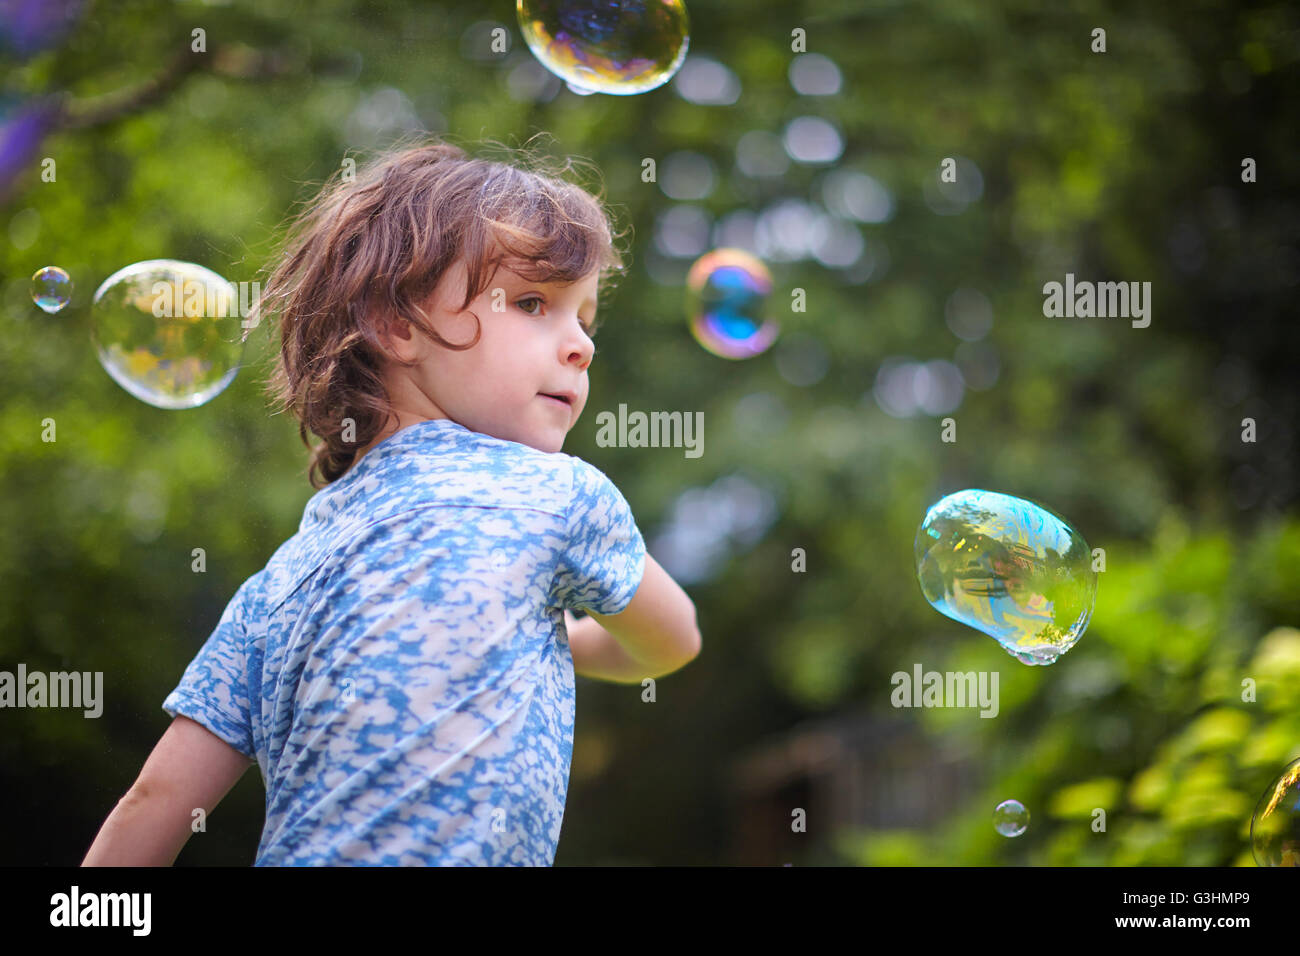 Girl waving bubble wand in garden Stock Photo